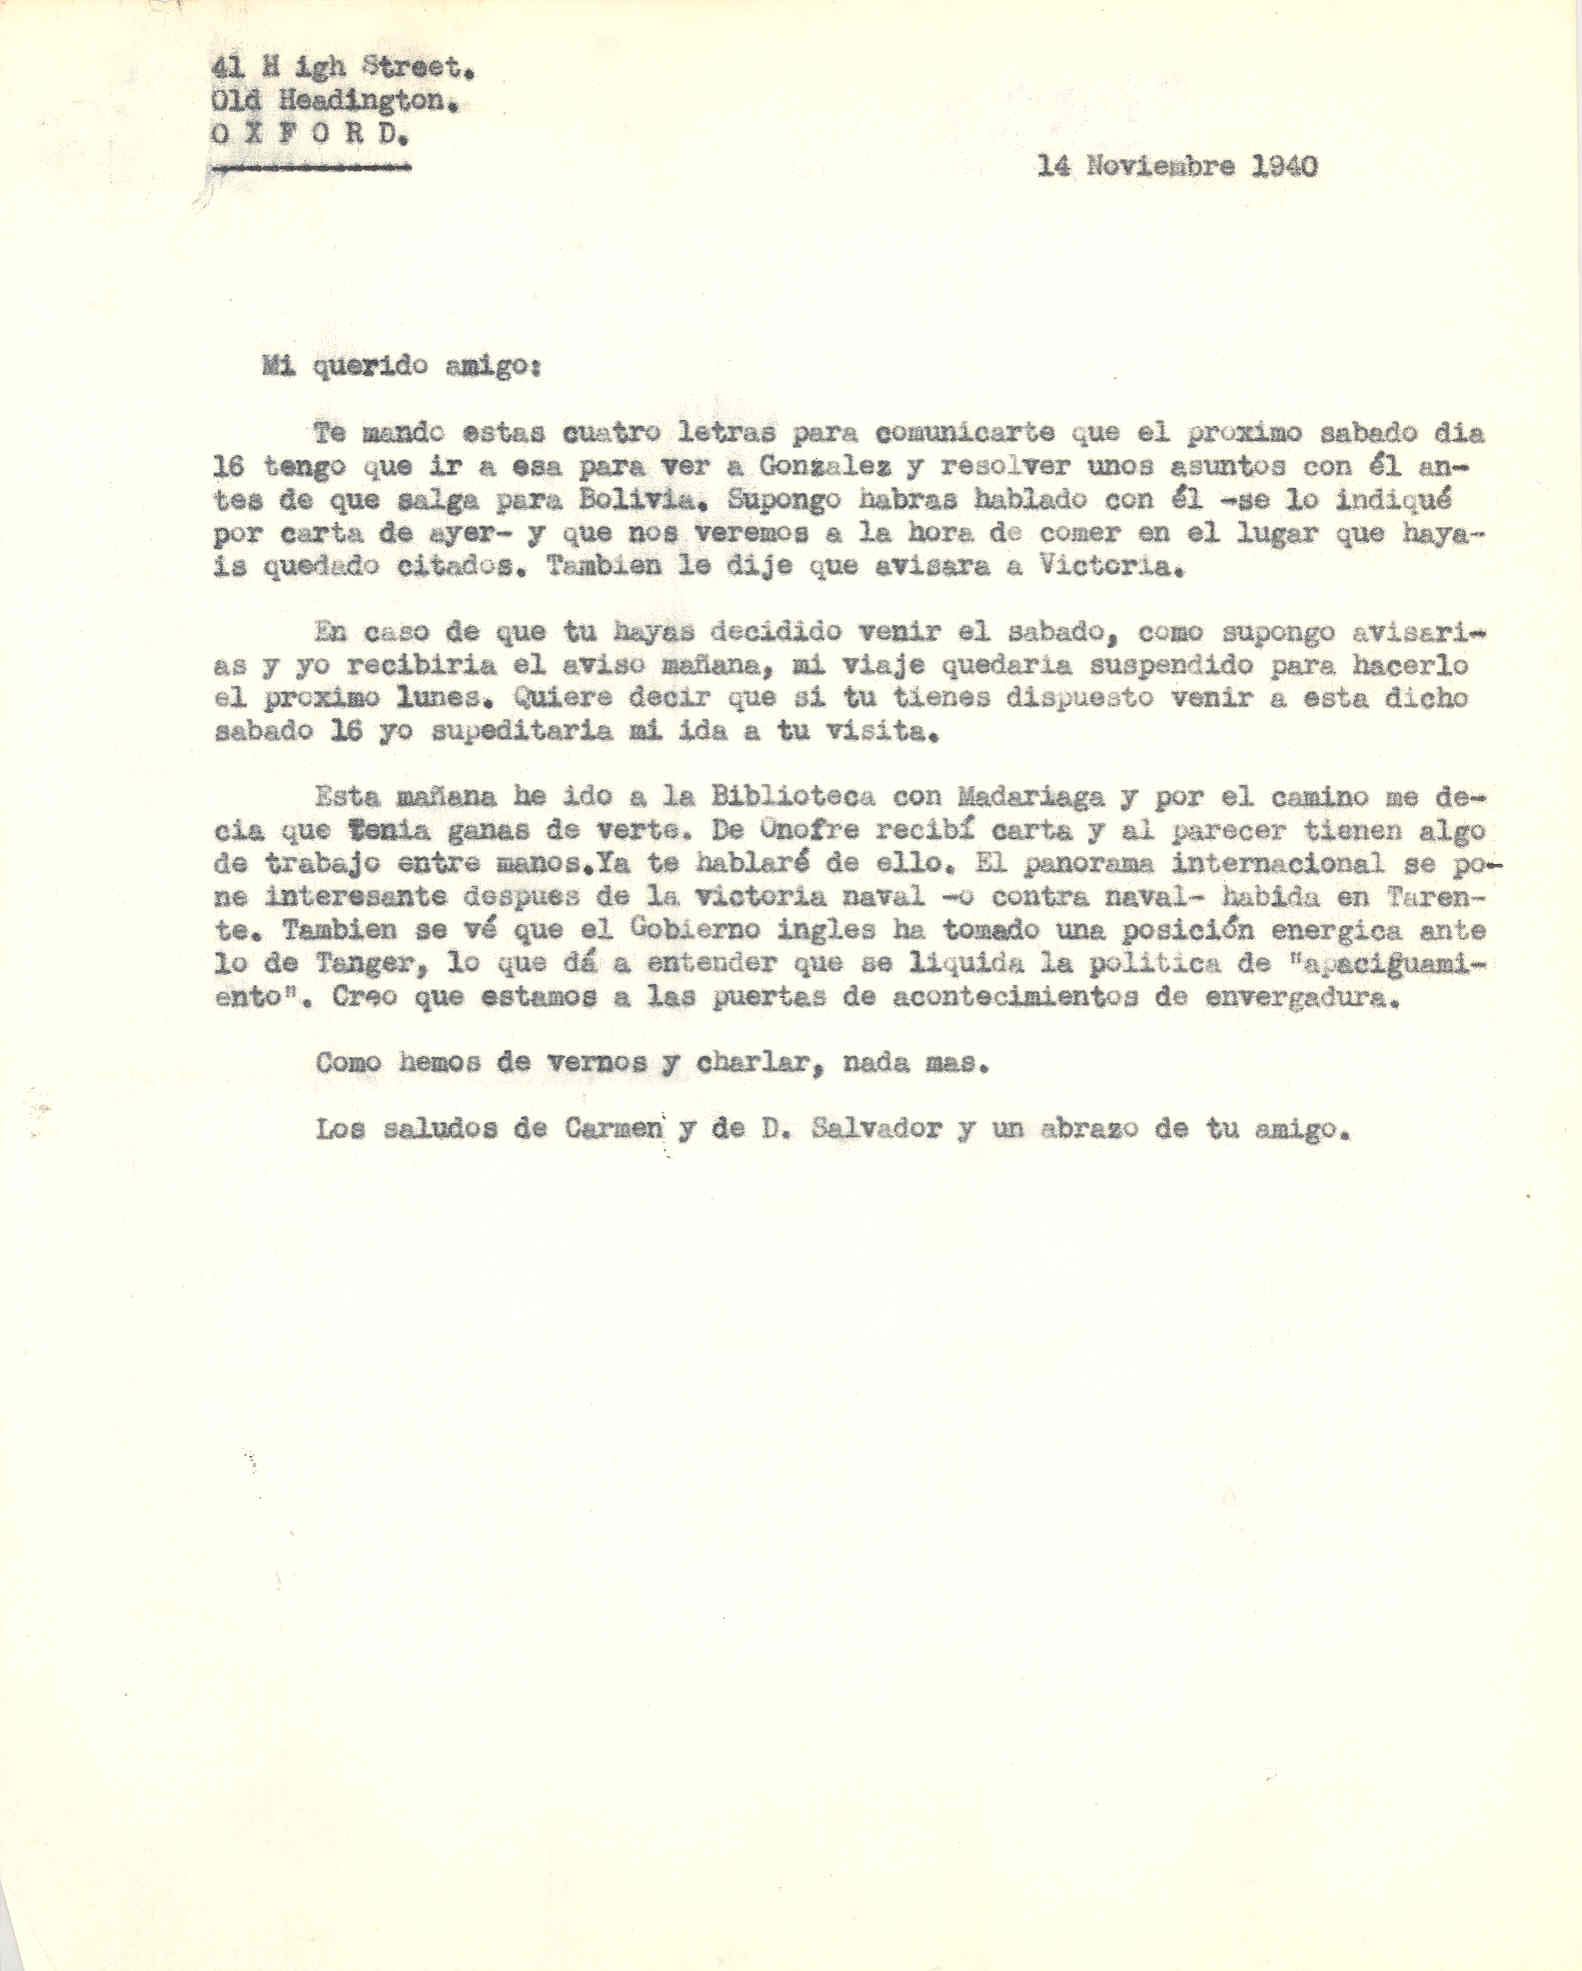 Carta a Segismundo Casado en la que cuenta el panorama internacional ante la guerra y algunos acontecimientos como la posición del gobierno inglés ante Tánger.